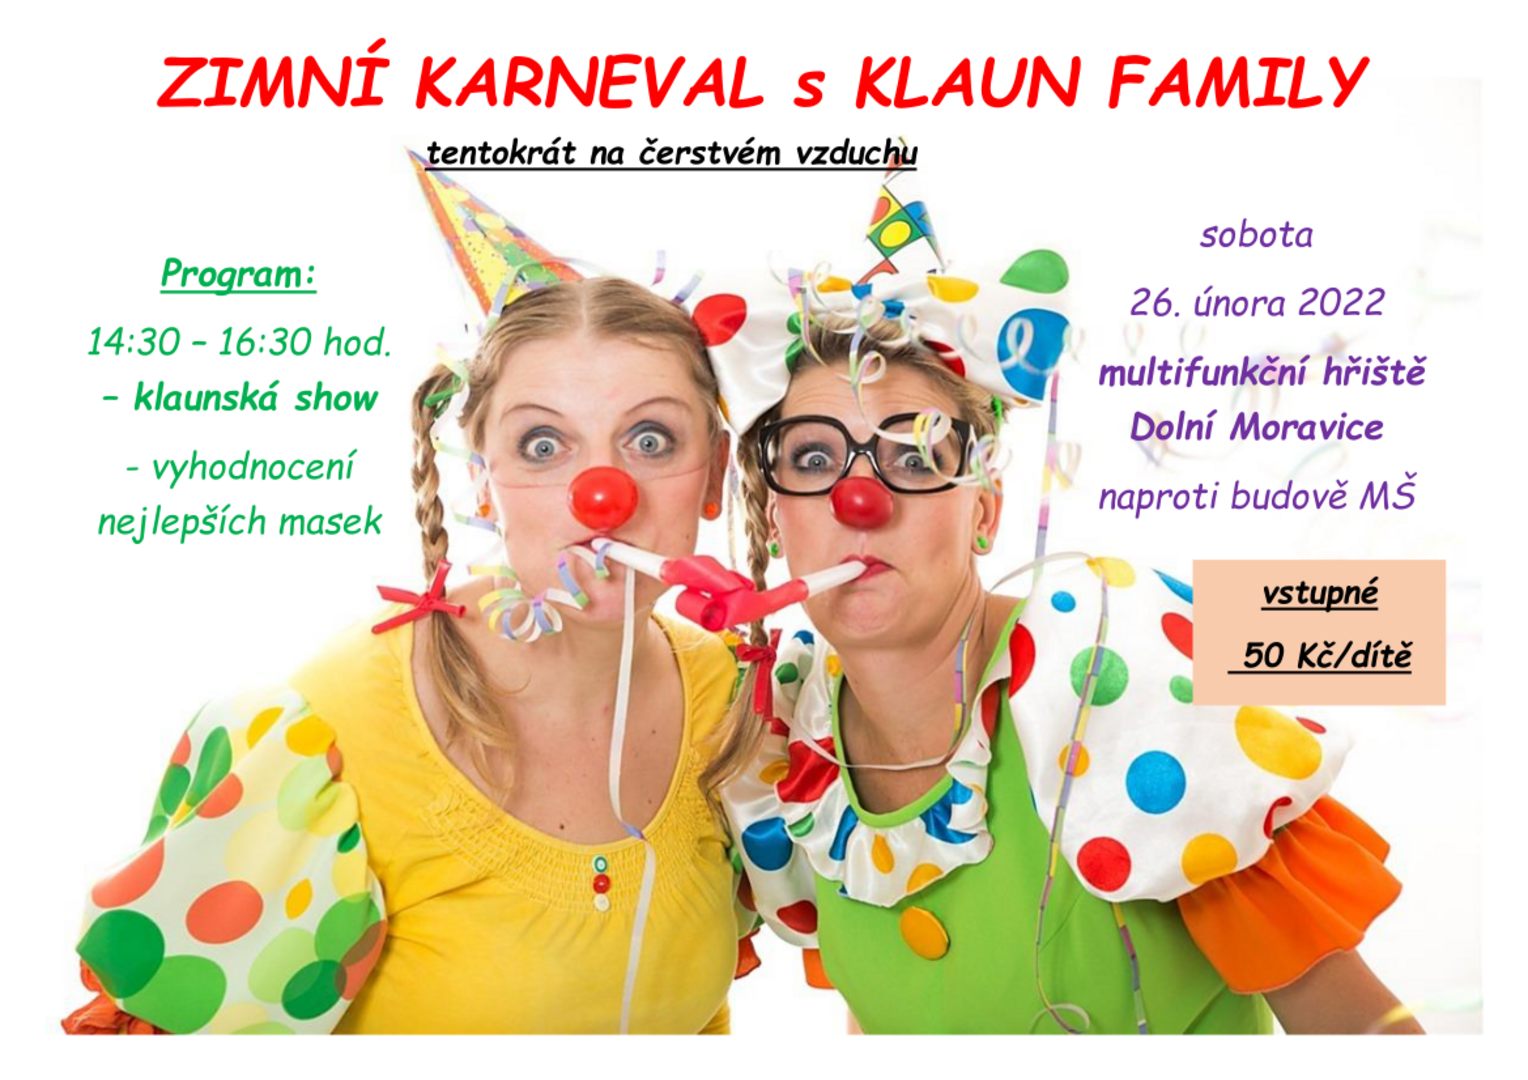 Plakát Zimní karneval s KLAUN FAMILY